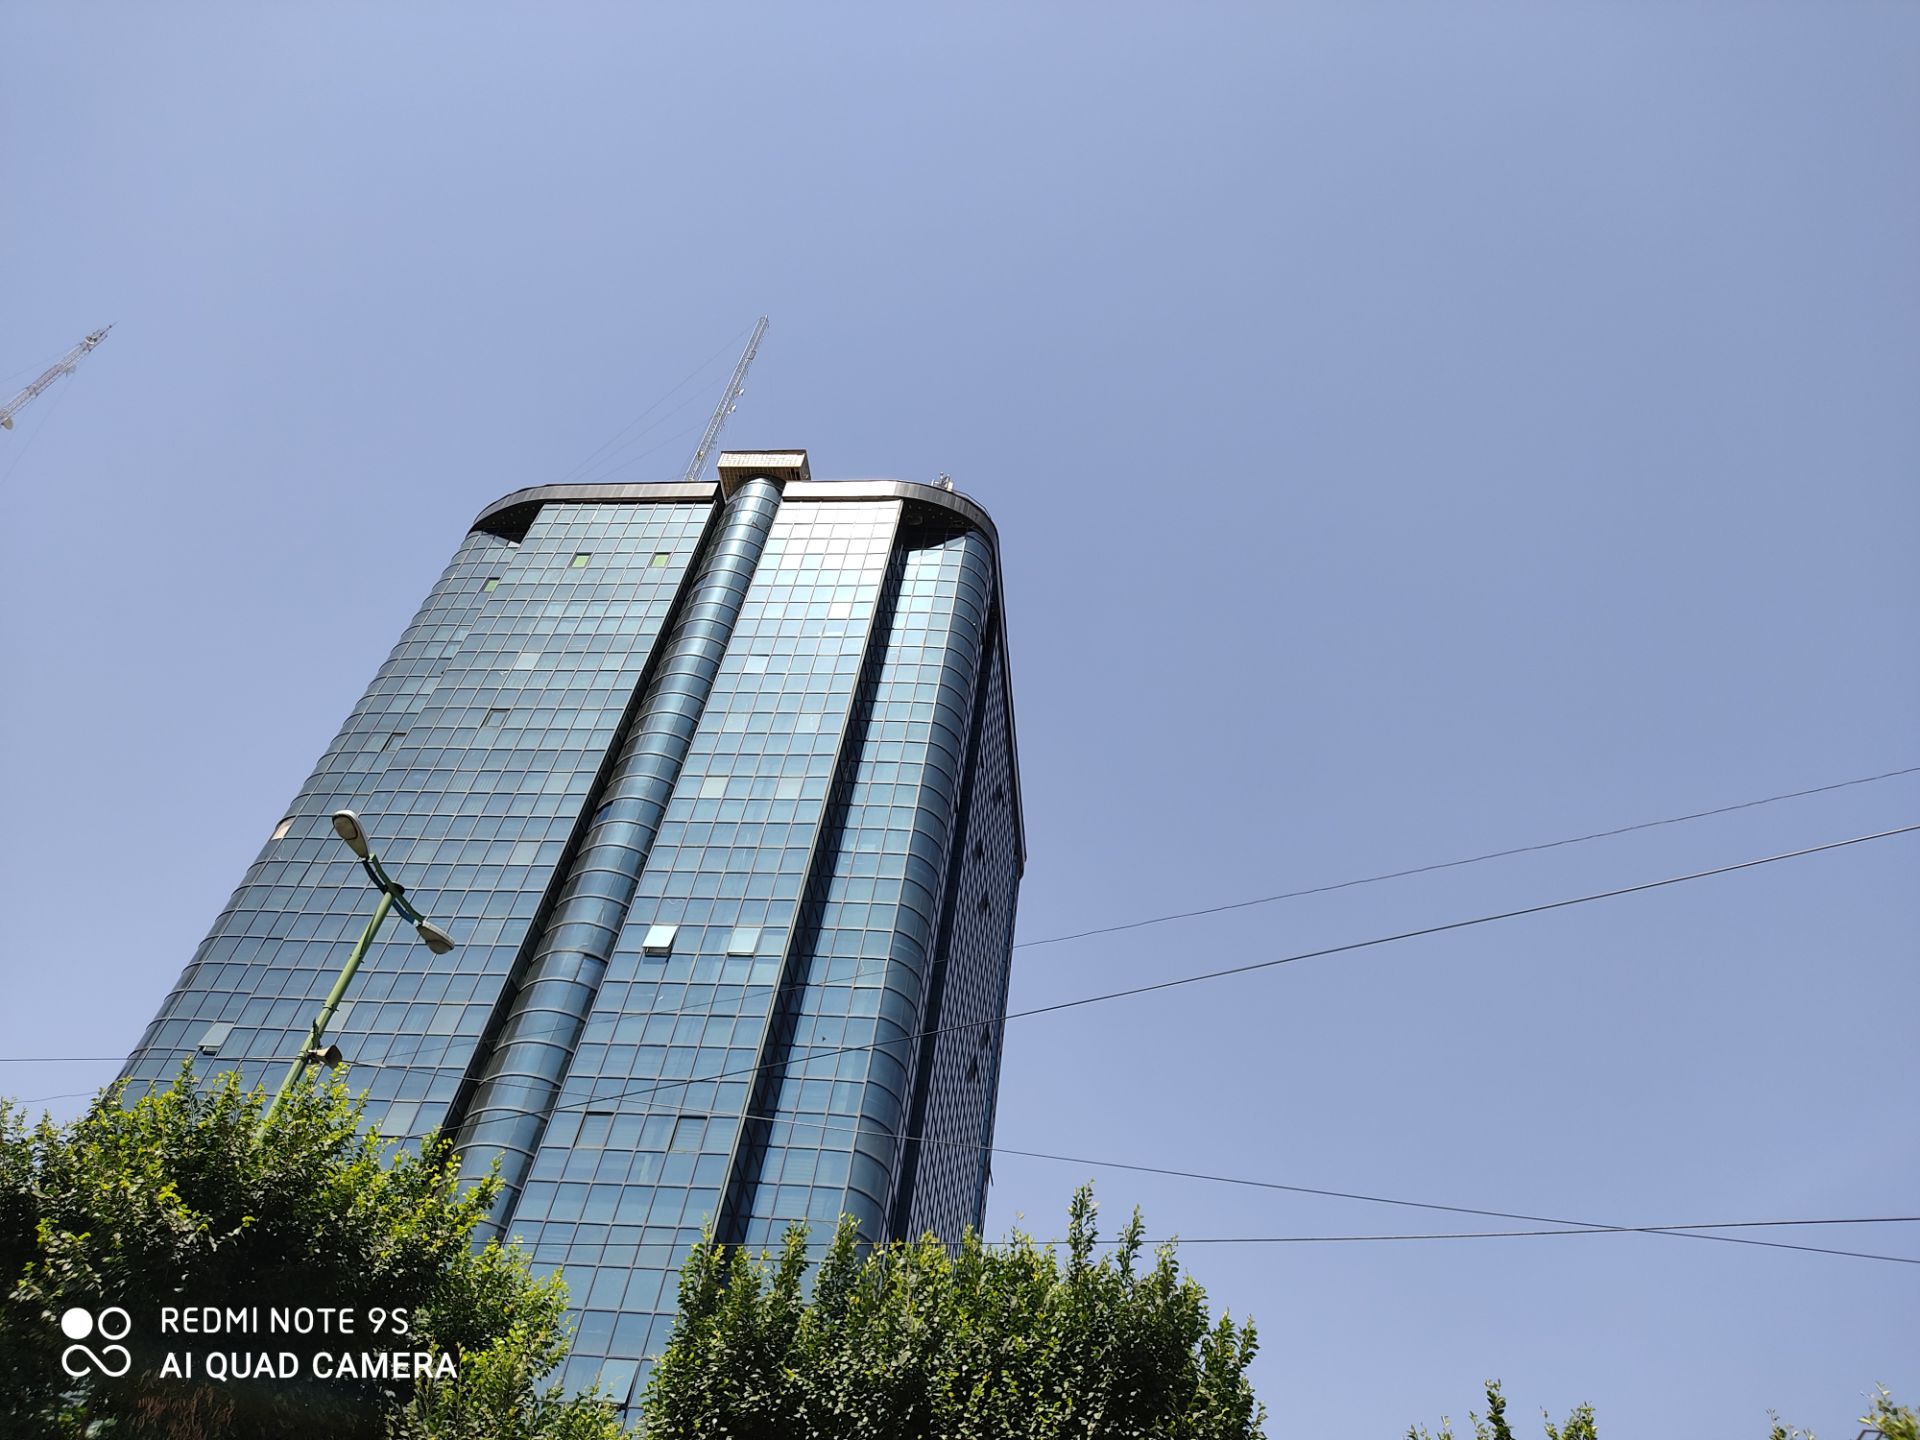 مرجع متخصصين ايران نمونه عكس ردمي نوت 9 اس - نماي ساختمان بلند